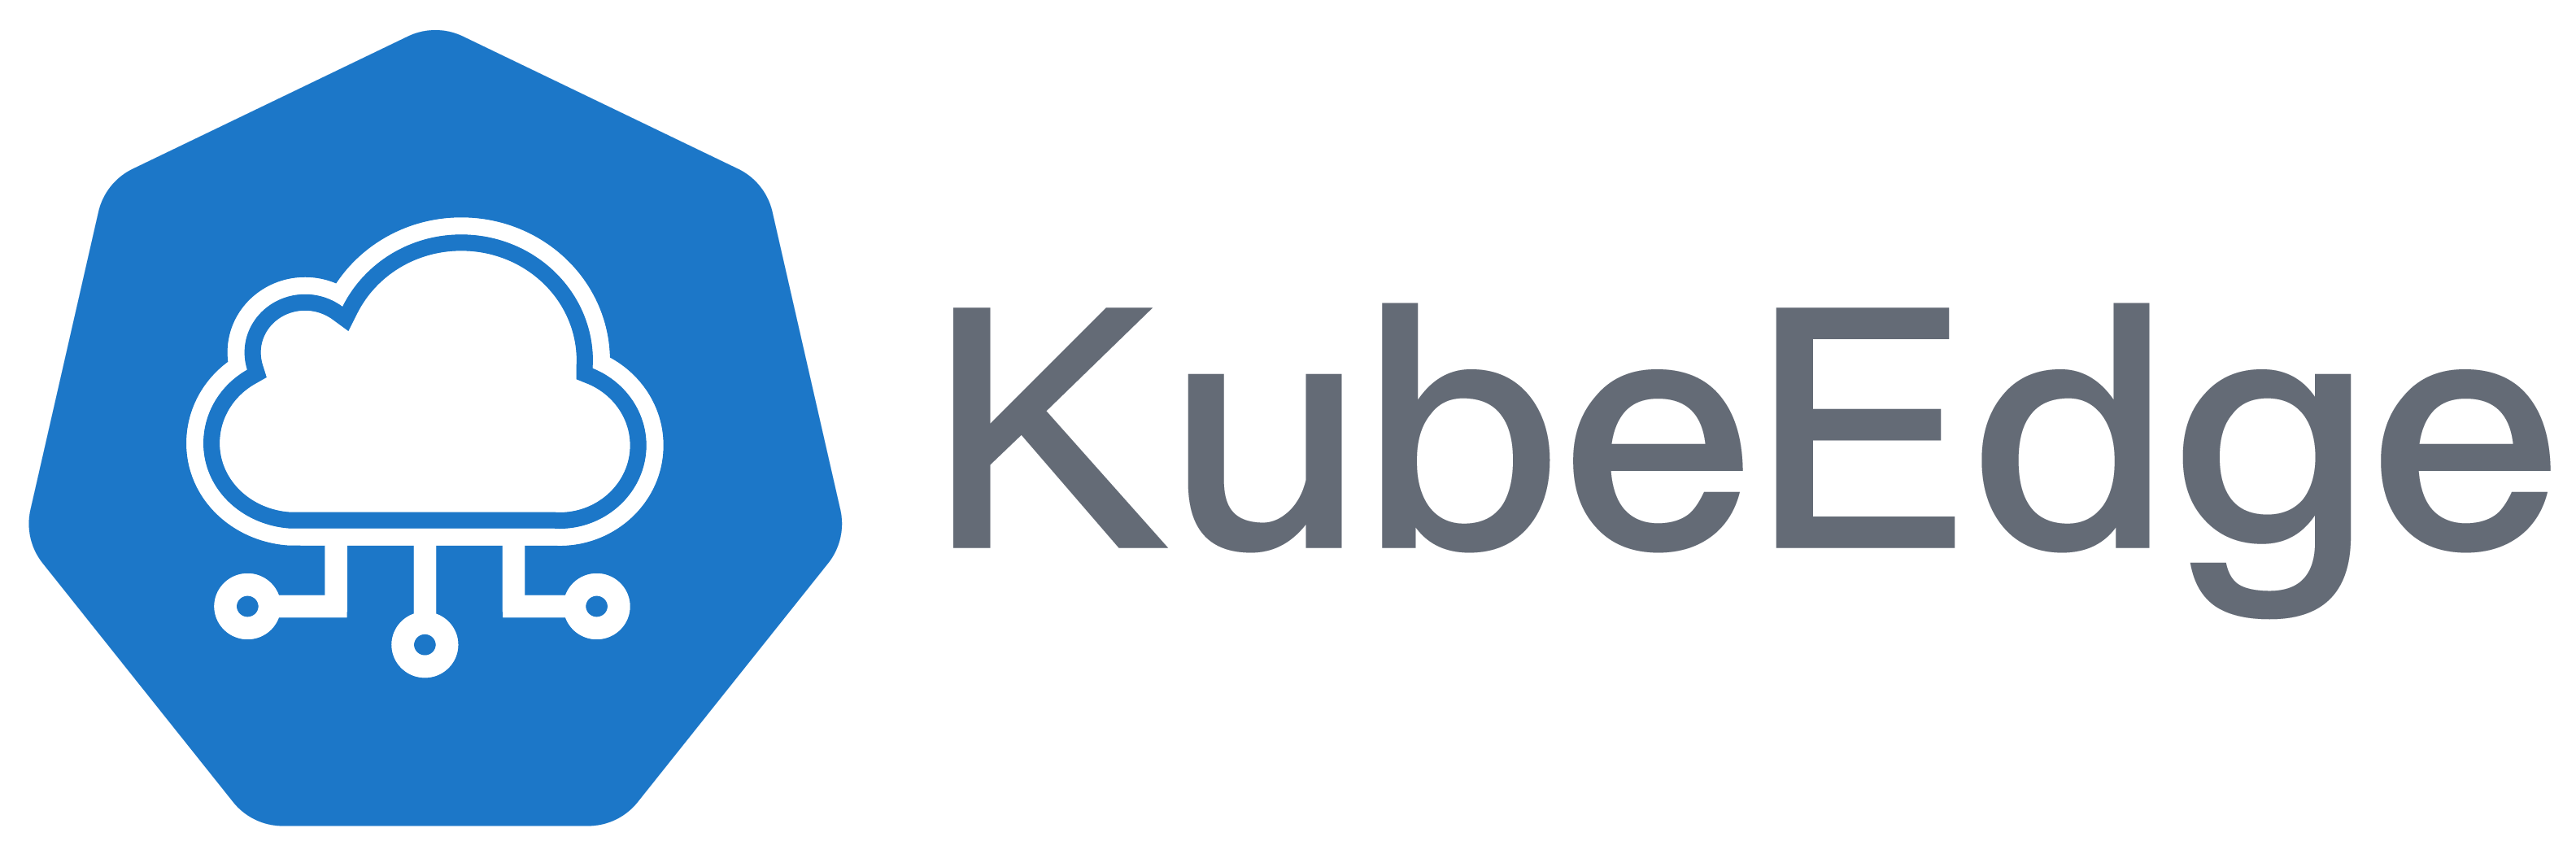 kubeedge-horizontal-color